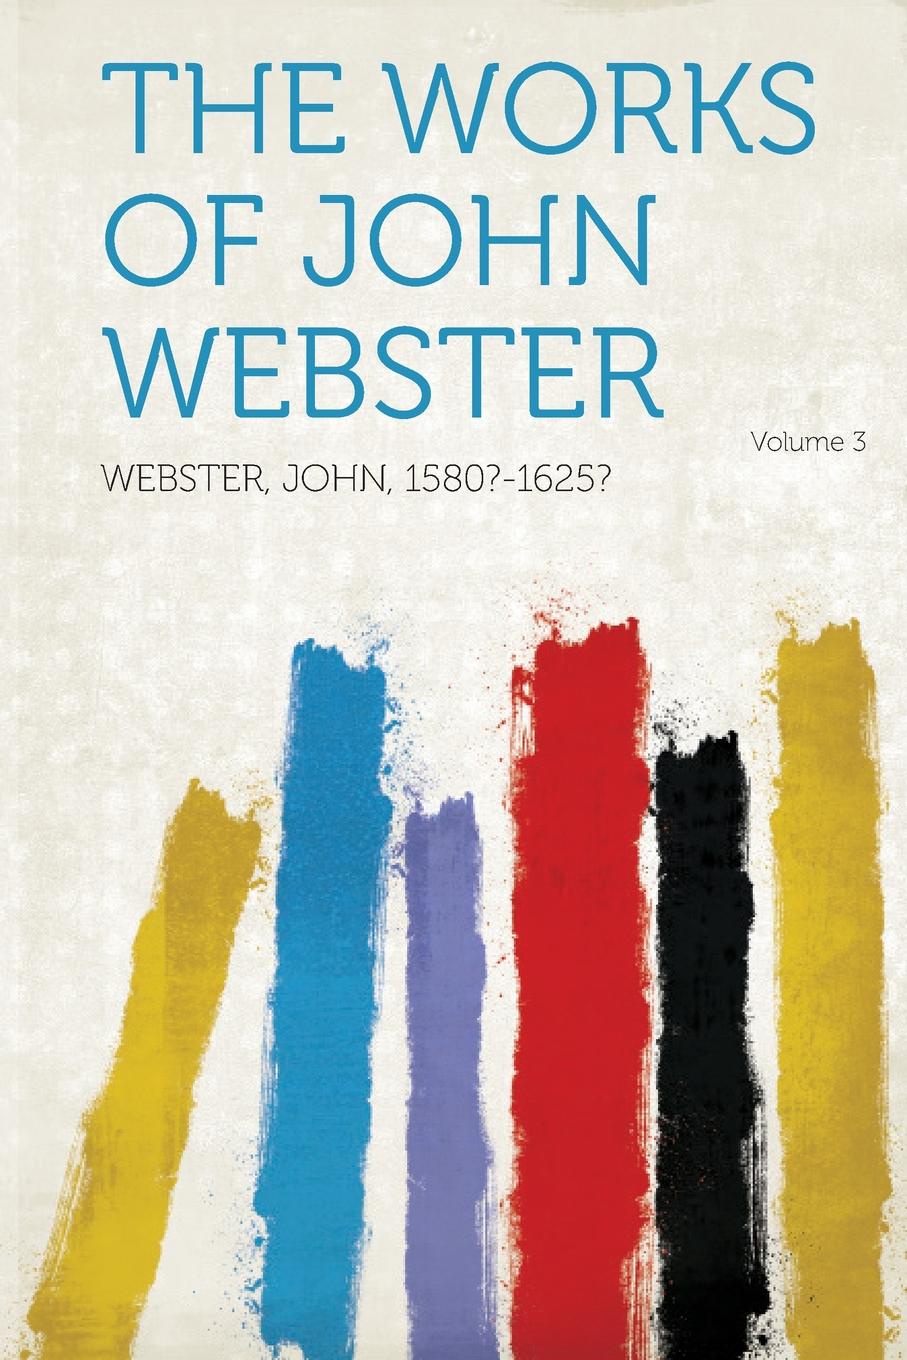 The Works of John Webster Volume 3